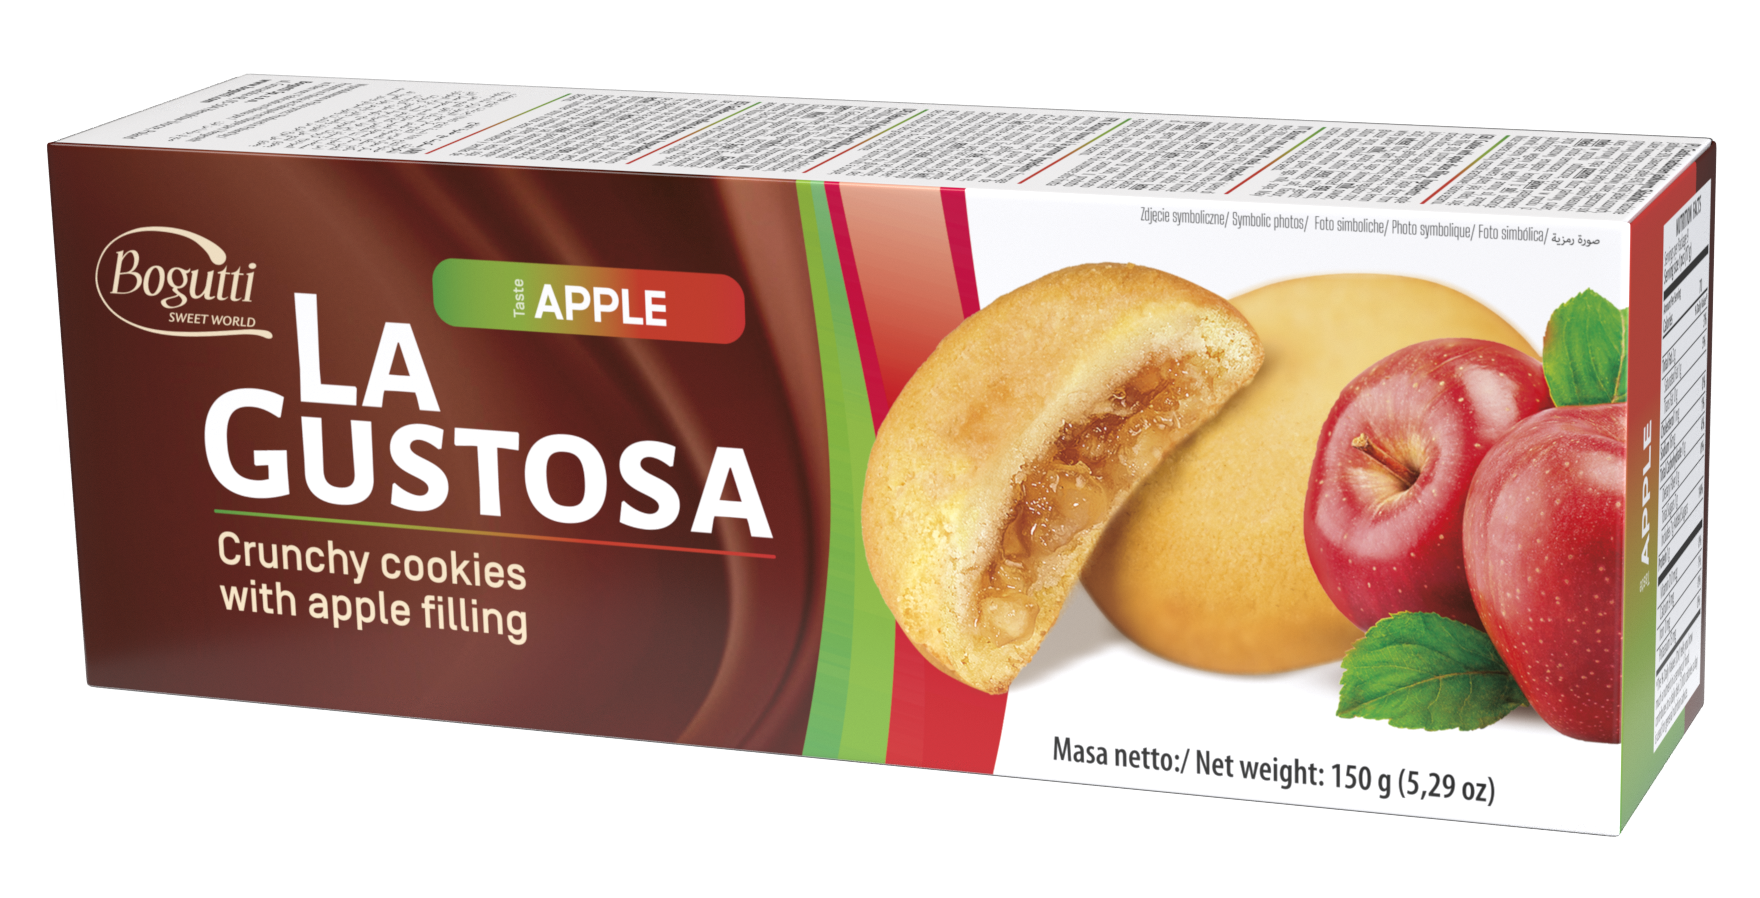 La Gustosa – Kruche ciastka z kremem jabłkowym